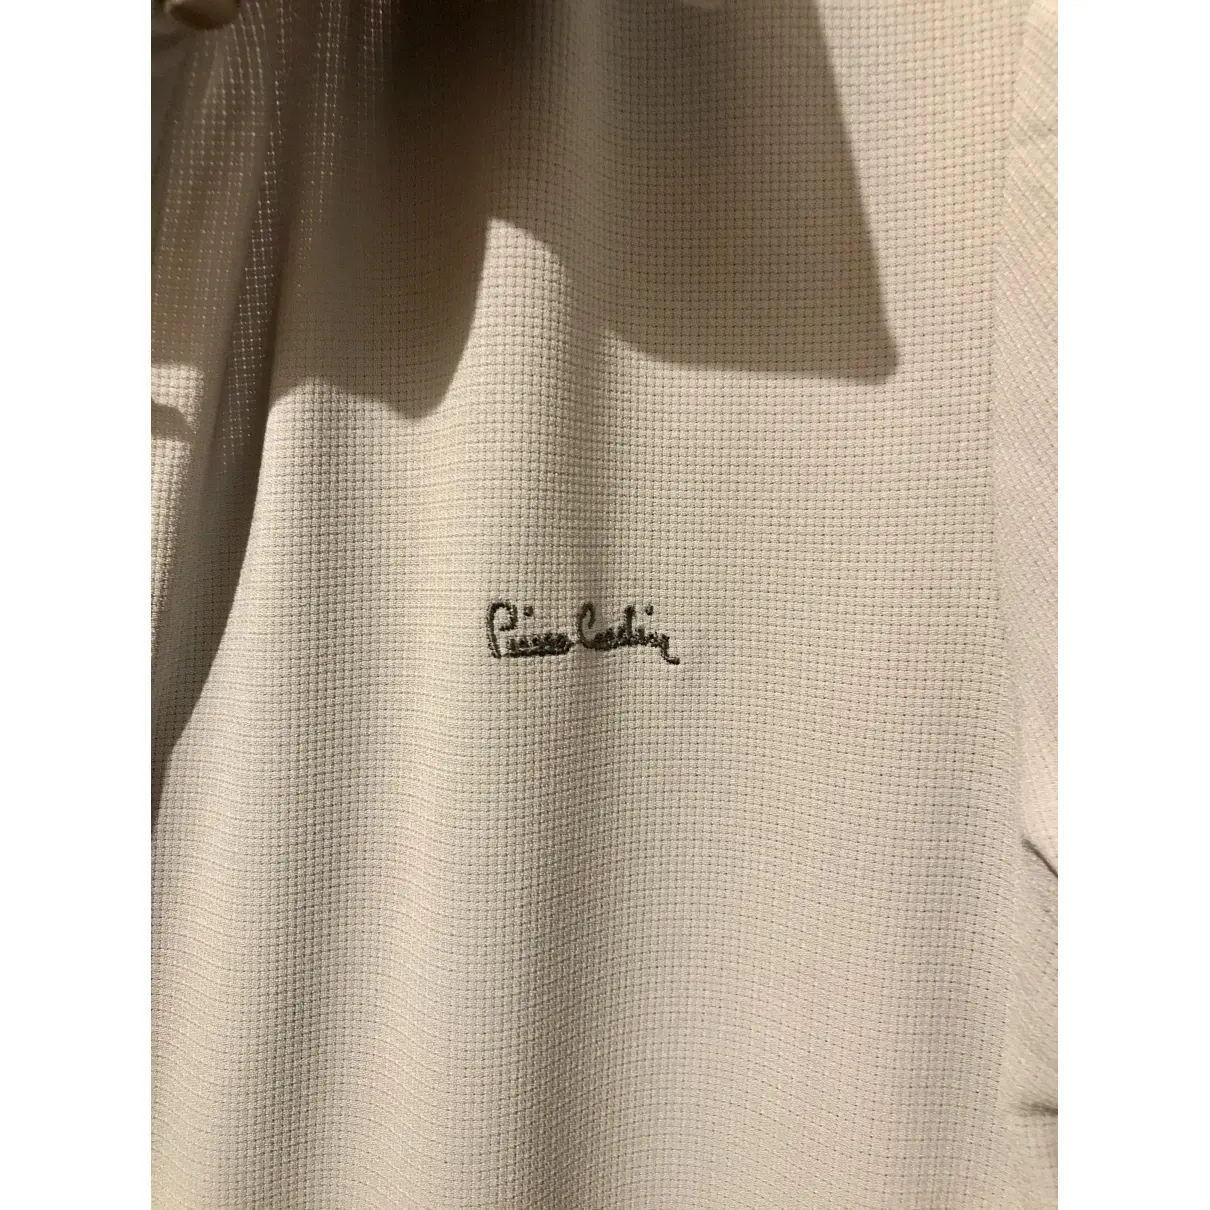 Buy Pierre Cardin Mid-length dress online